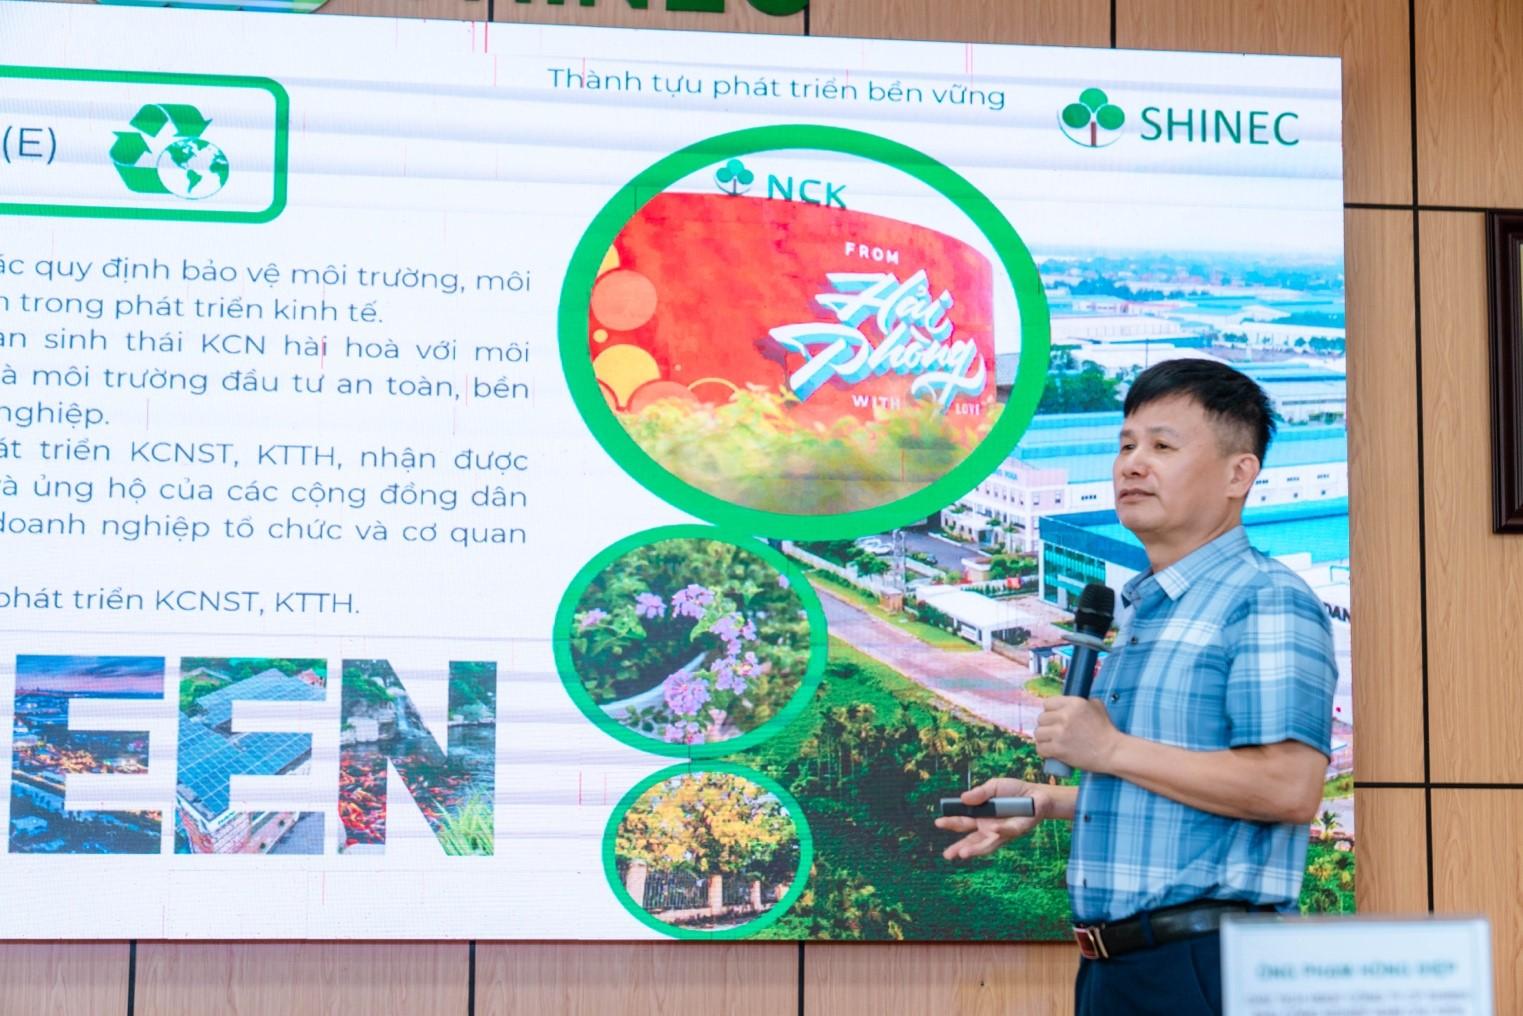 Ông Phạm Hồng Điệp, Chủ tịch Công ty CP Shinec chia sẻ về những giá trị của Công ty và KCN Nam Cầu Kiền theo ESG.